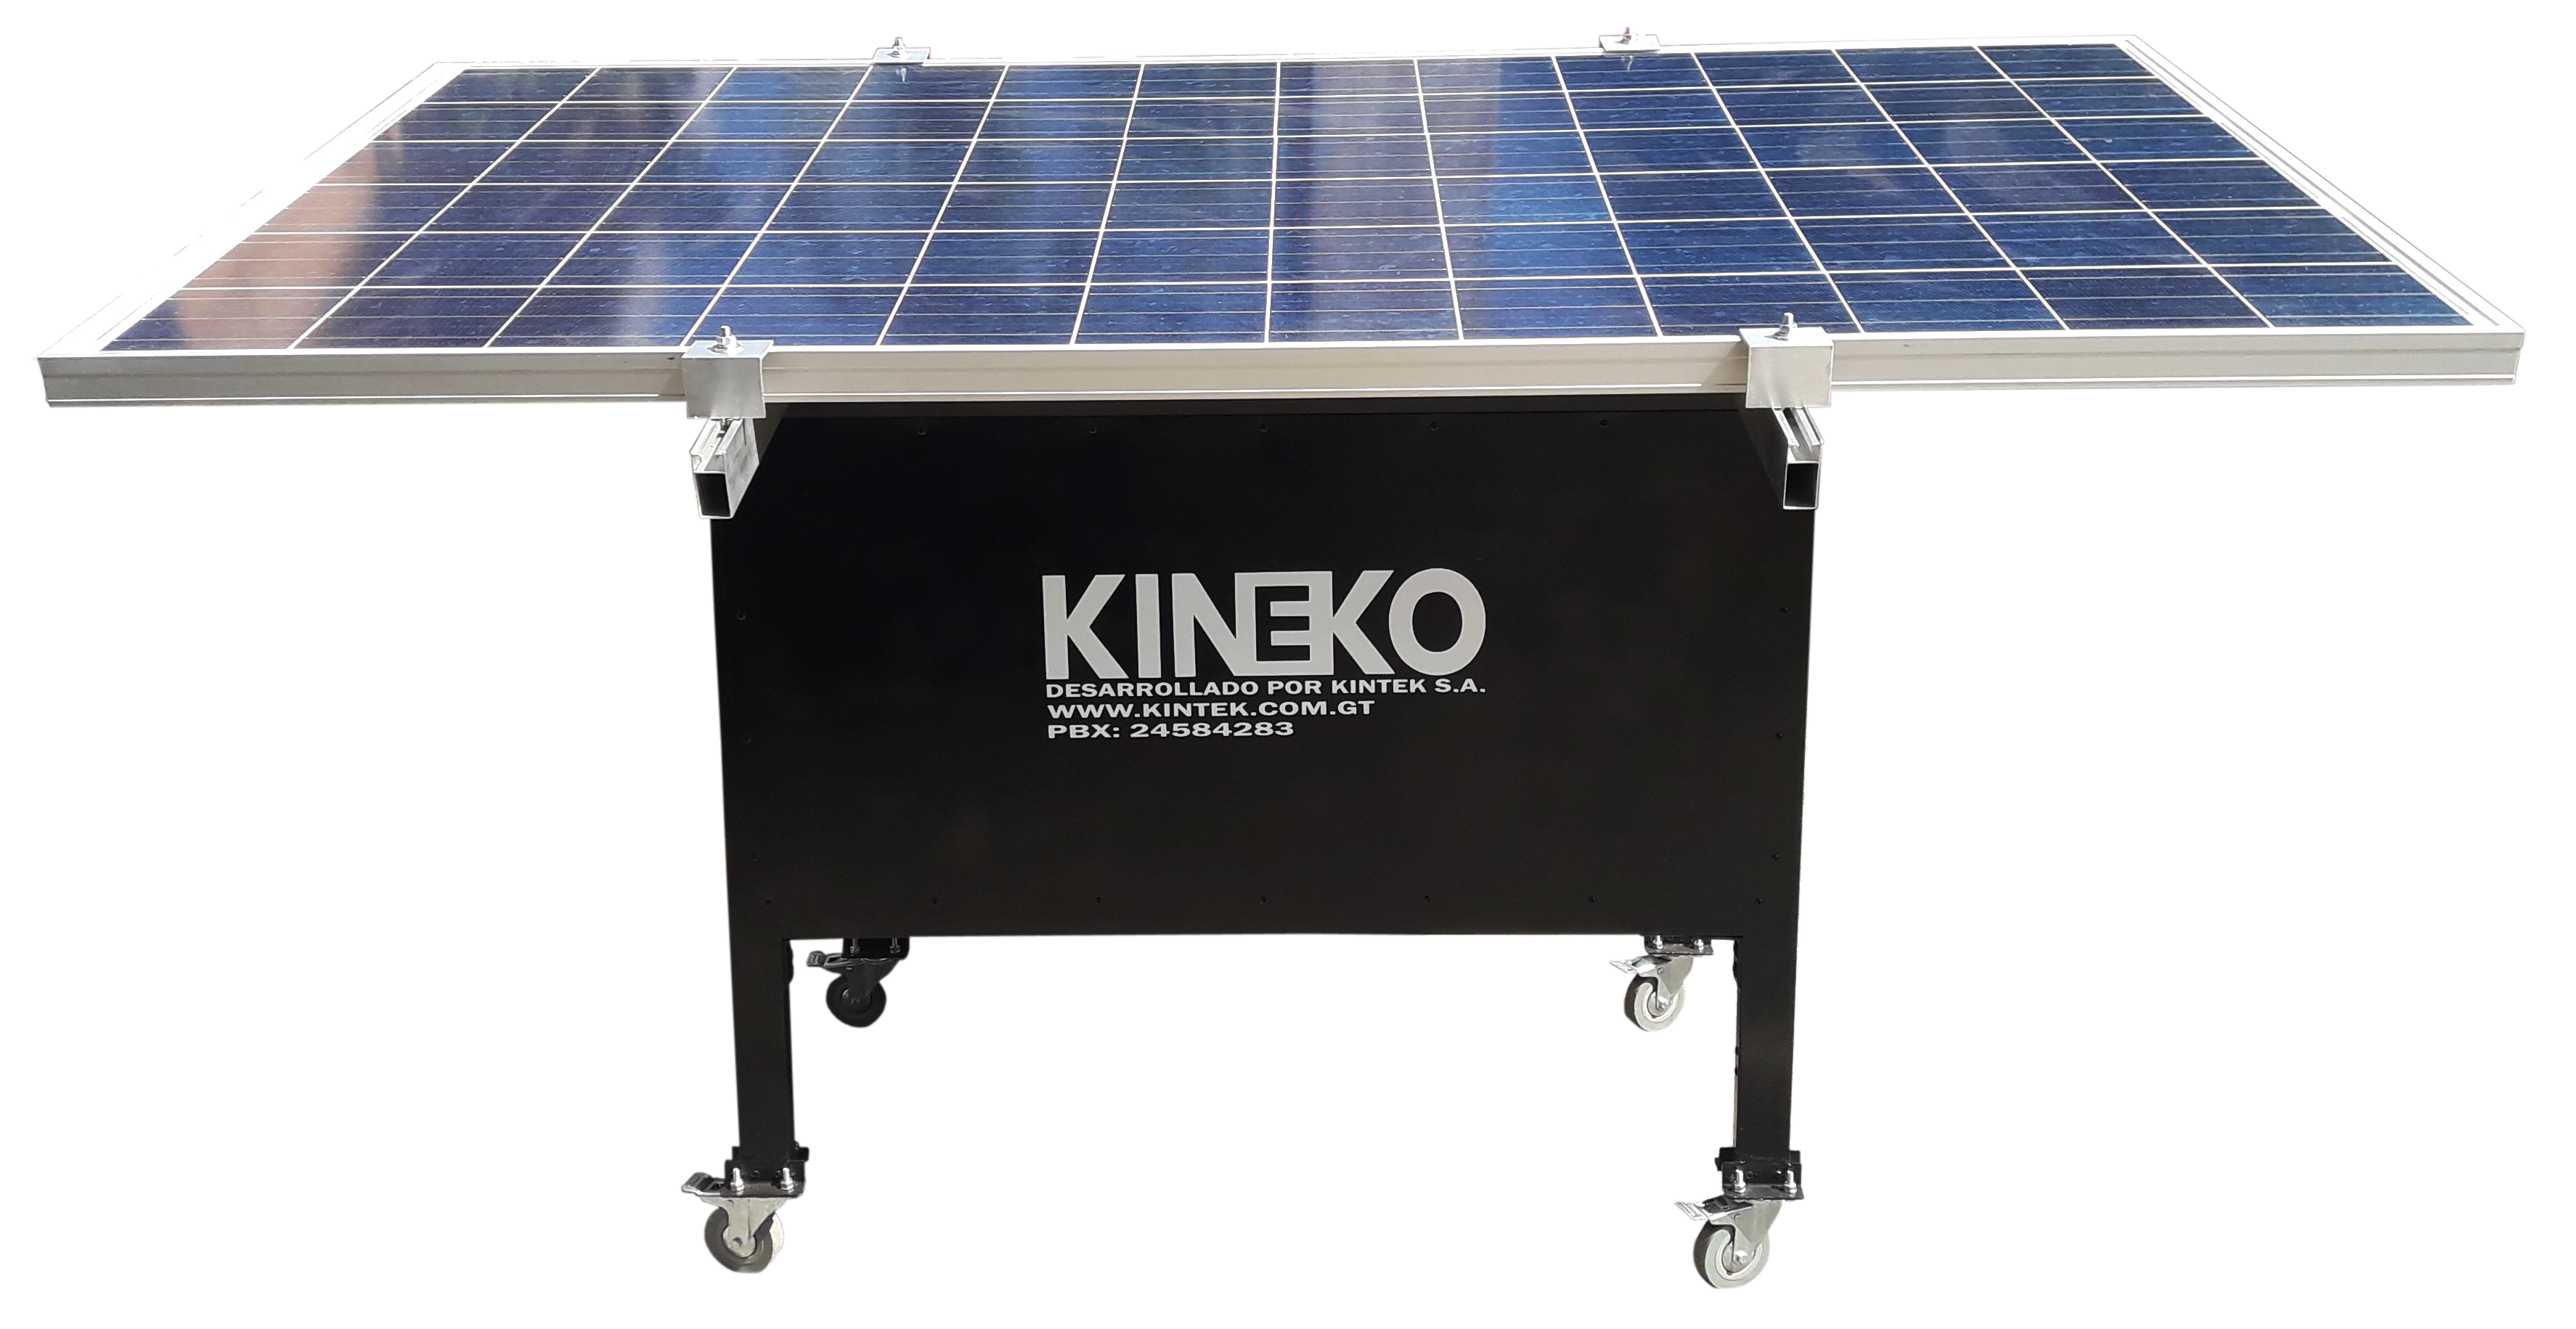 tal vez superficie ropa Planta Eléctrica Solar Móvil RURAL KINEKO – Ingeniería que soluciona con  innovaciones